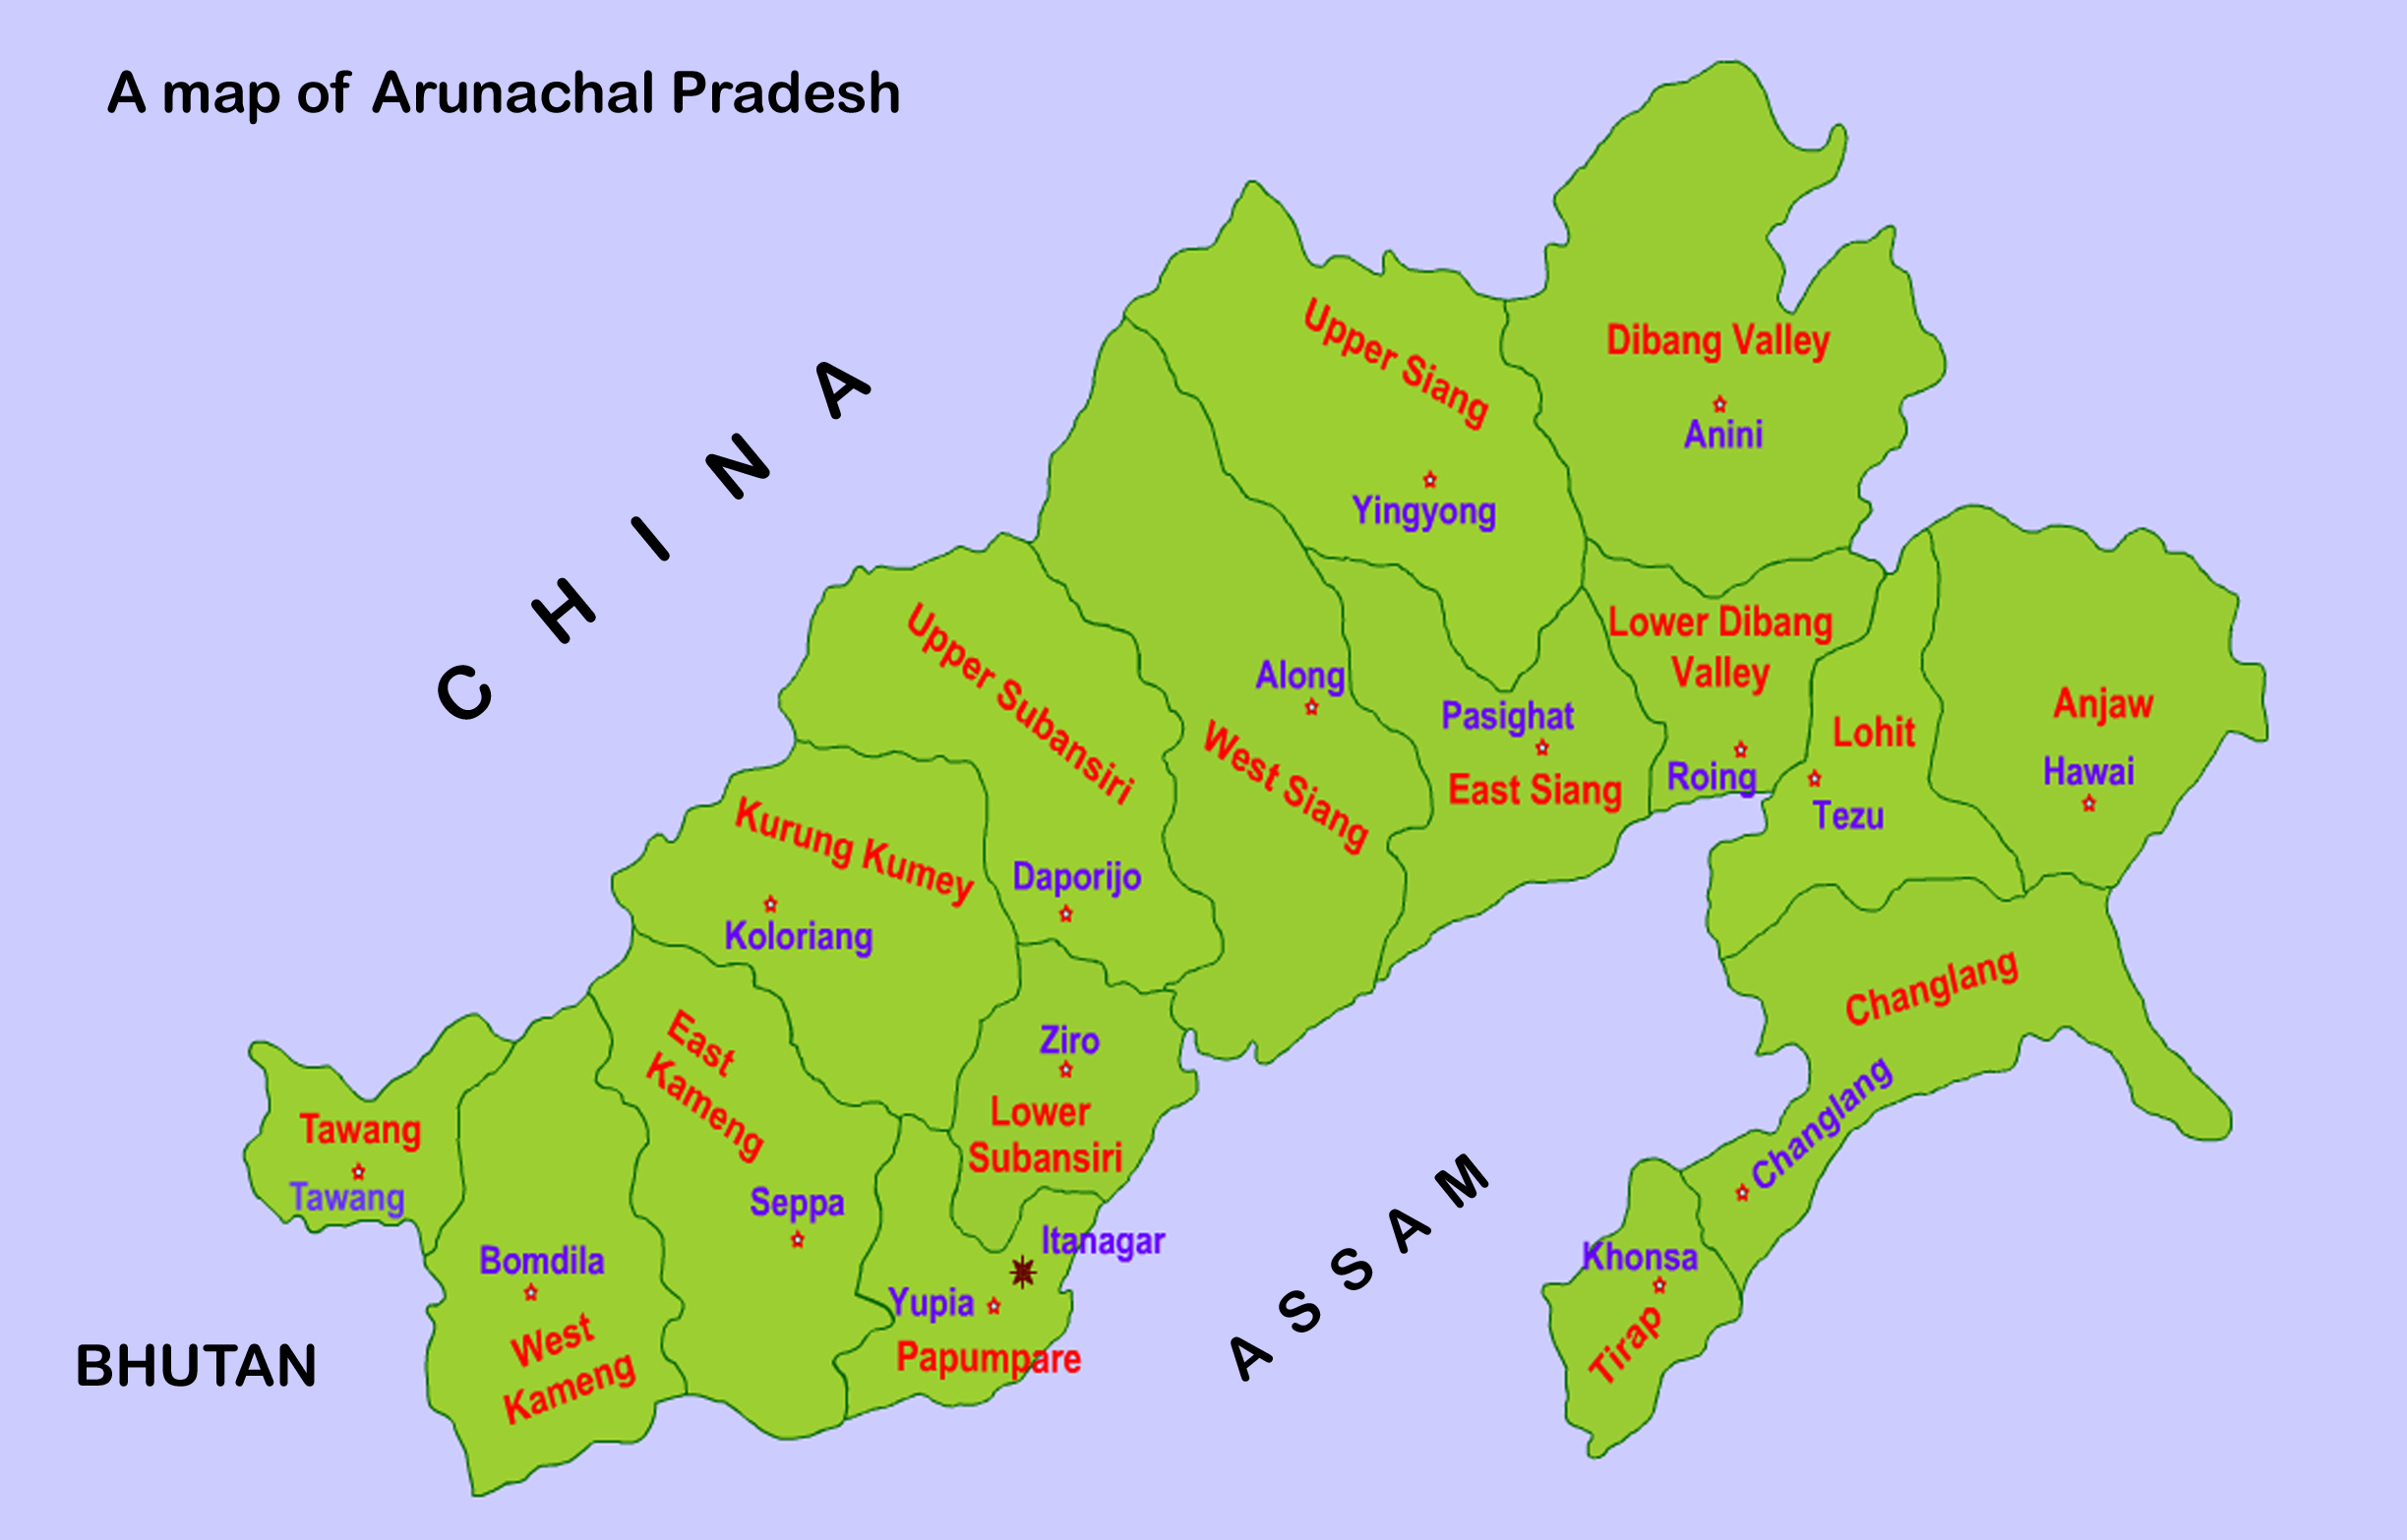 arunachal pradesh district wise results